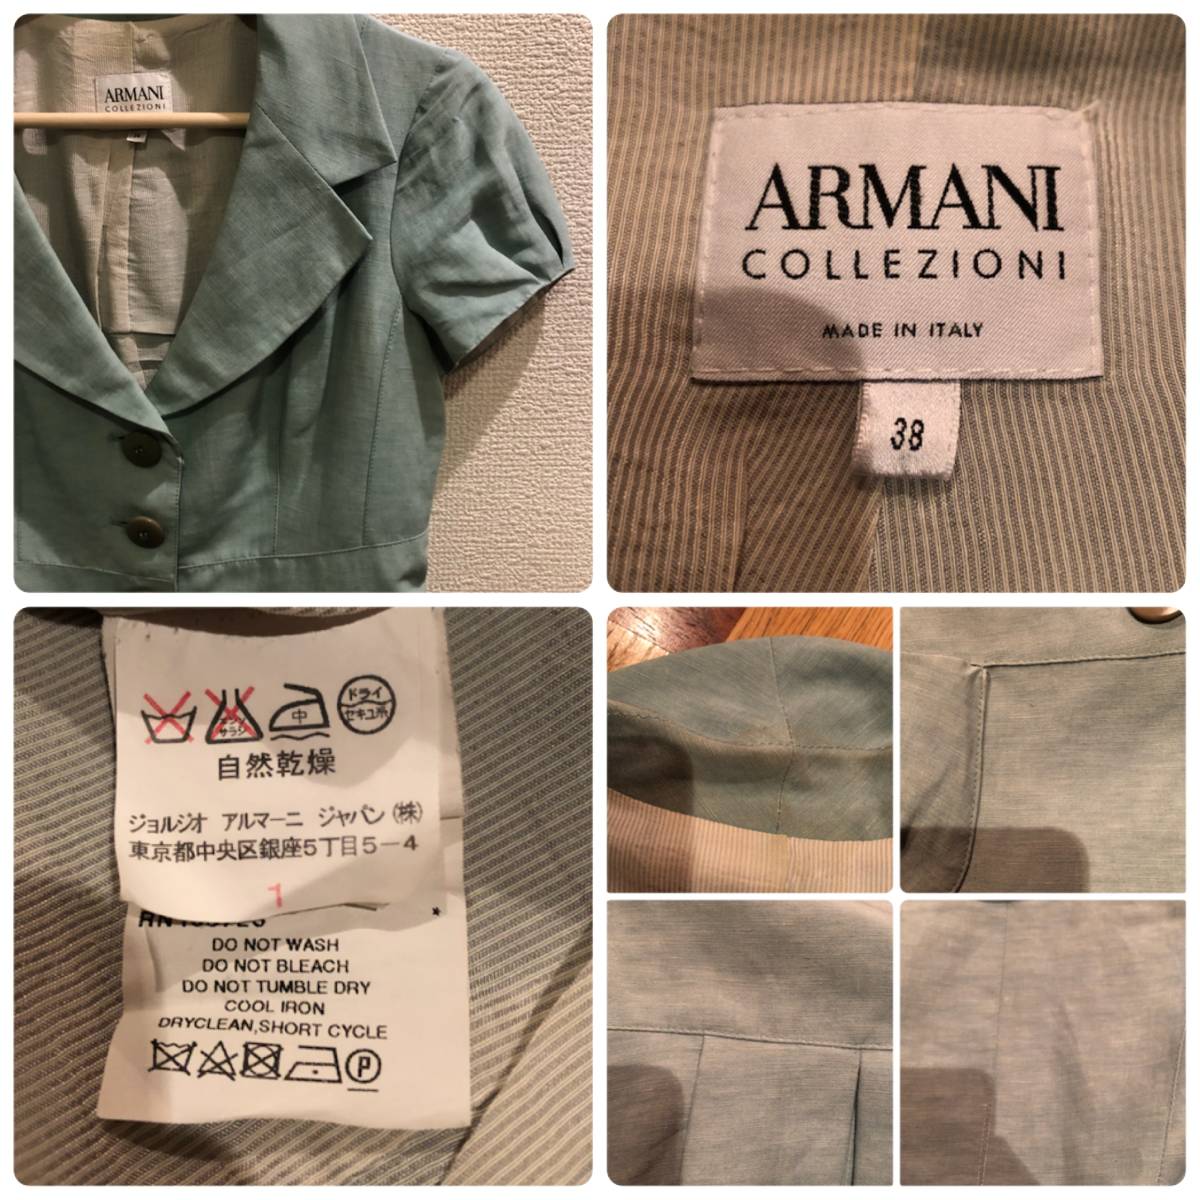  Armani ko let's .-ni3.. шелк .linen материалы дизайн жакет 38/ выполненный в строгом стиле 